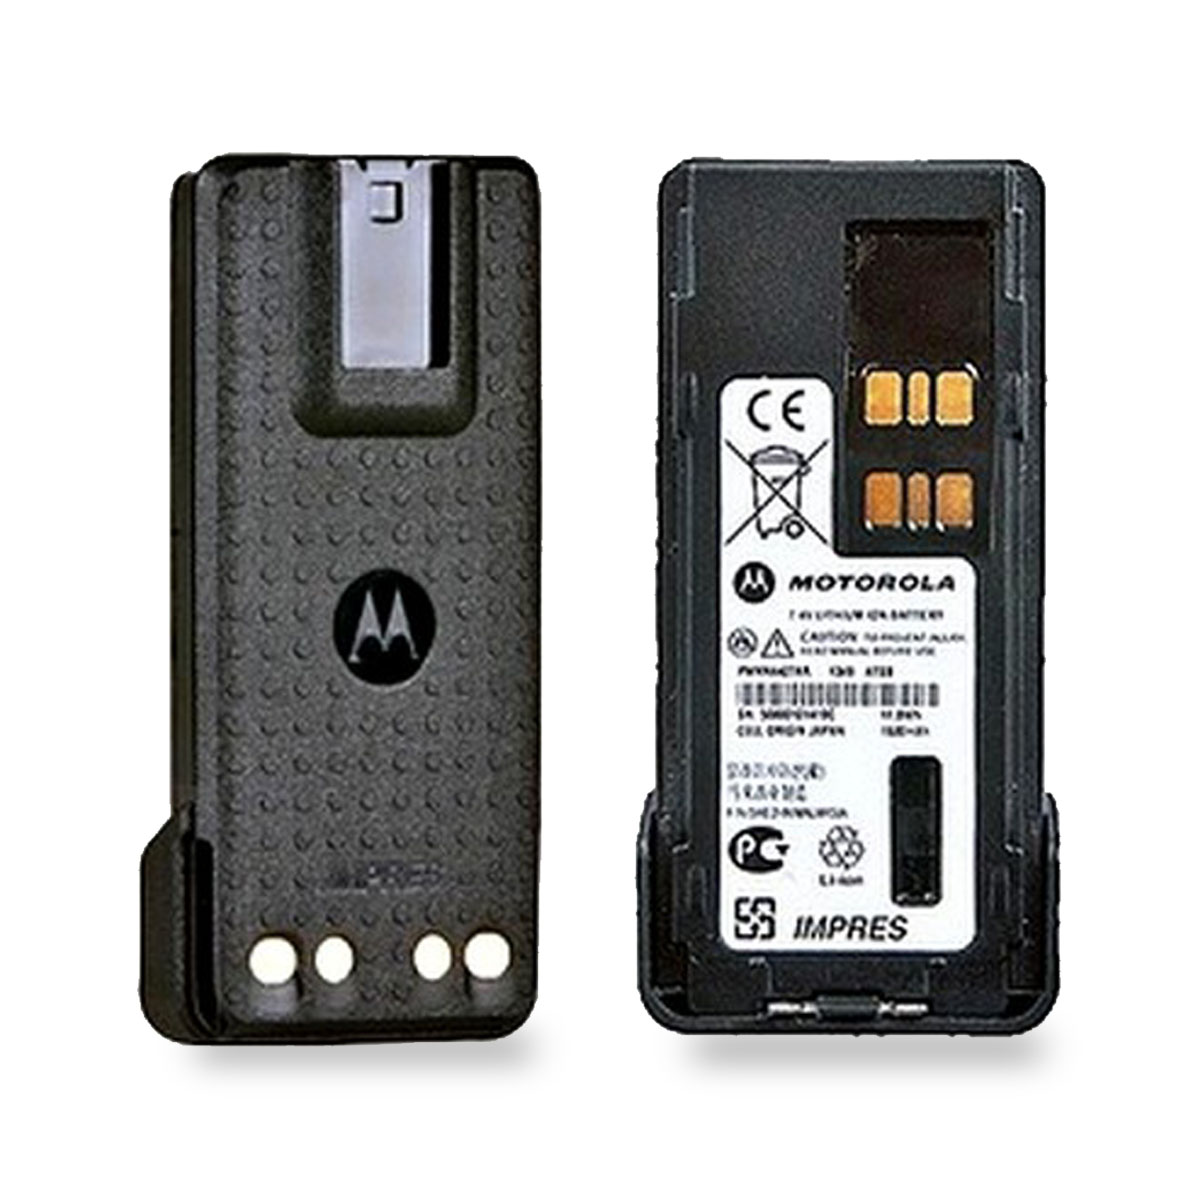 Batería Motorola Li-Ion 2250 mAh para Radio Serie DGP y DEP PMNN4409A